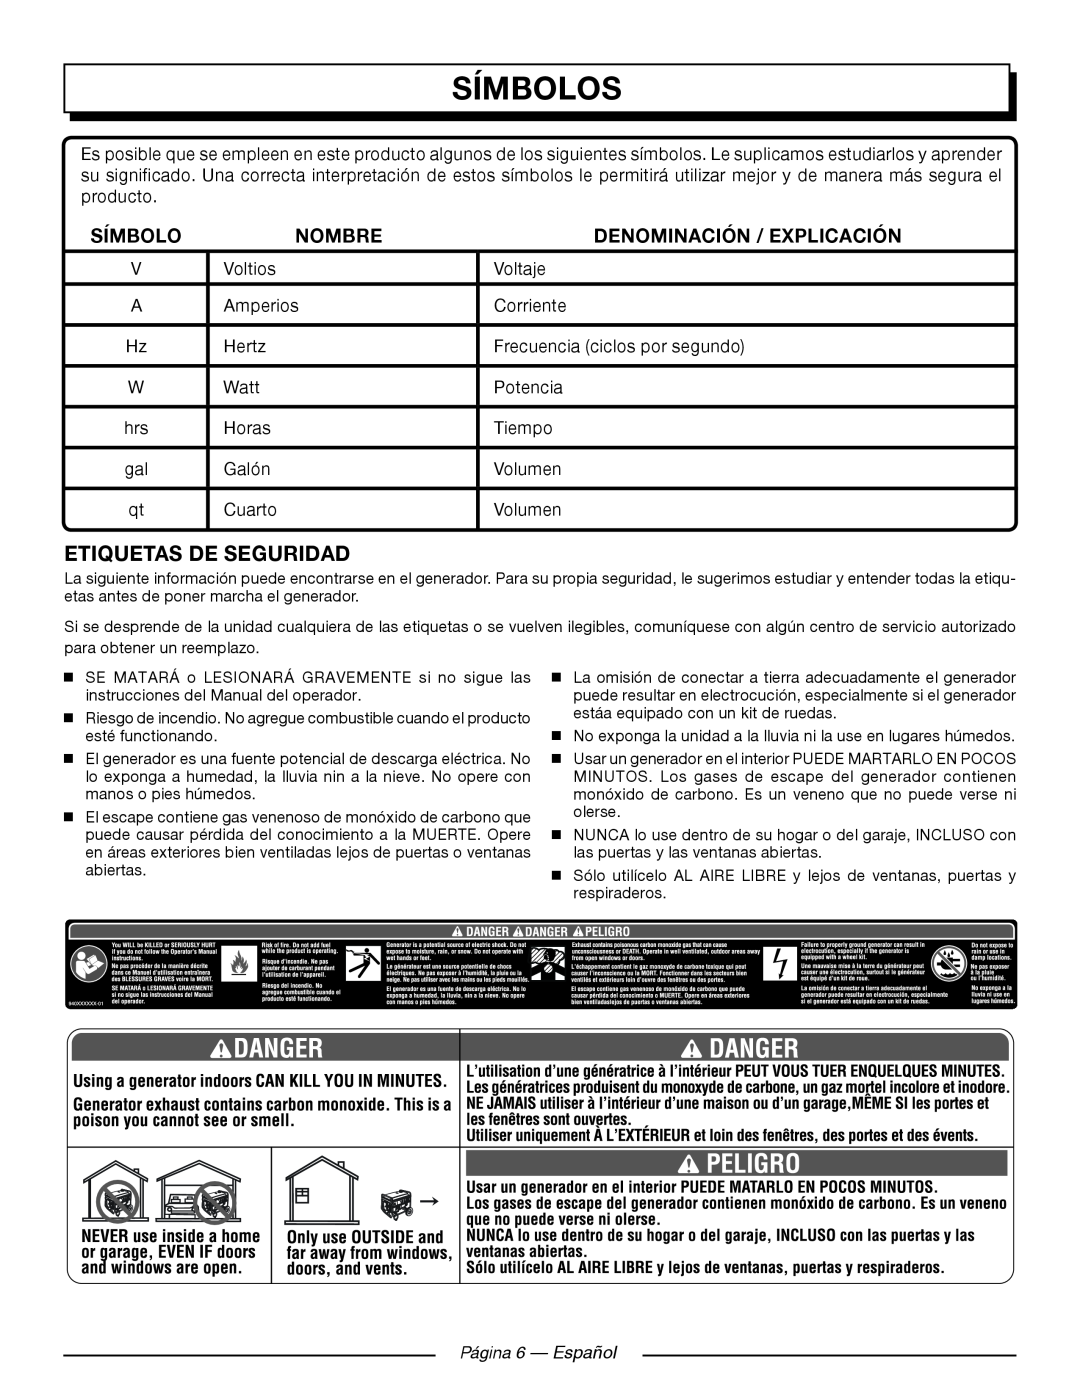 Homelite UT905011 Etiquetas De Seguridad, Página 6 — Español, Símbolos, Nombre, Denominación / Explicación 